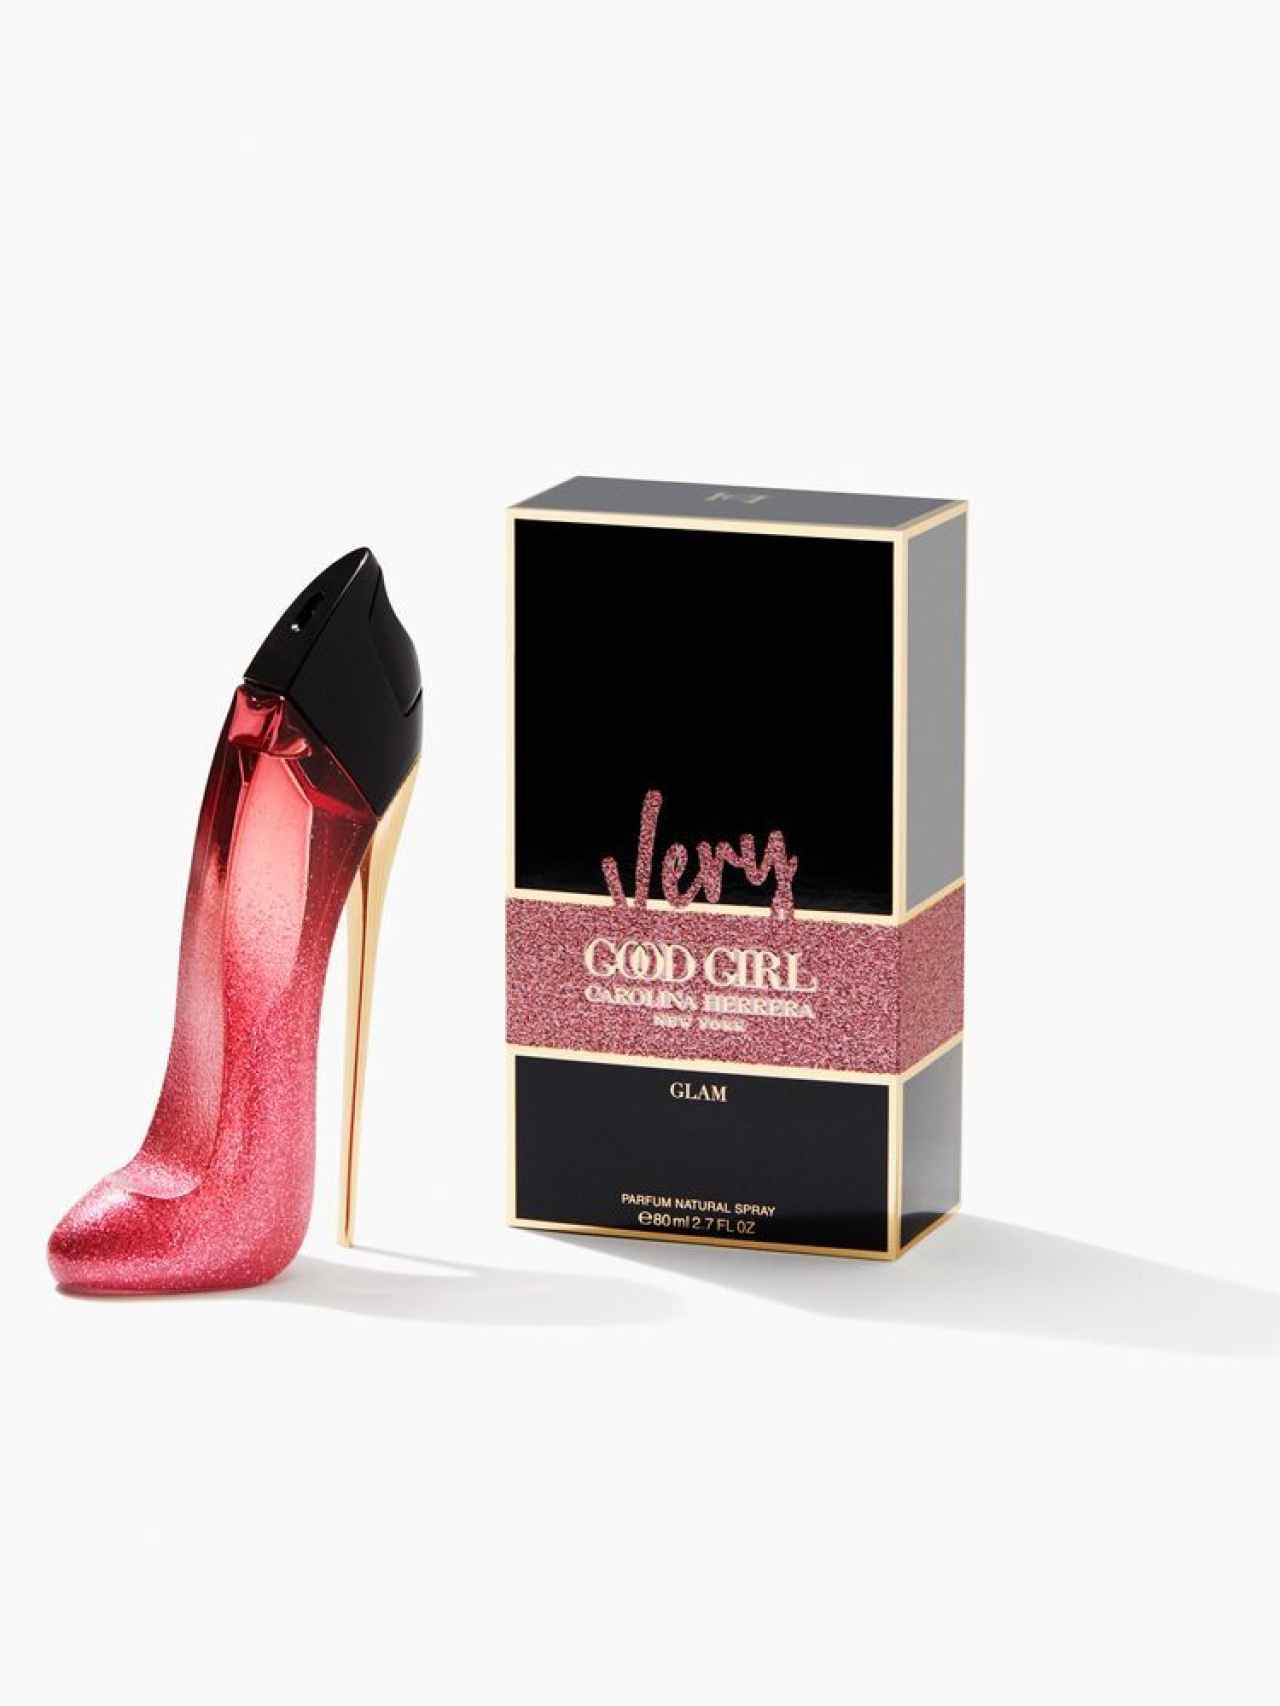 Very Good Girl Glam, nueva fragancia de Carolina Herrera que celebra el poder de la feminidad